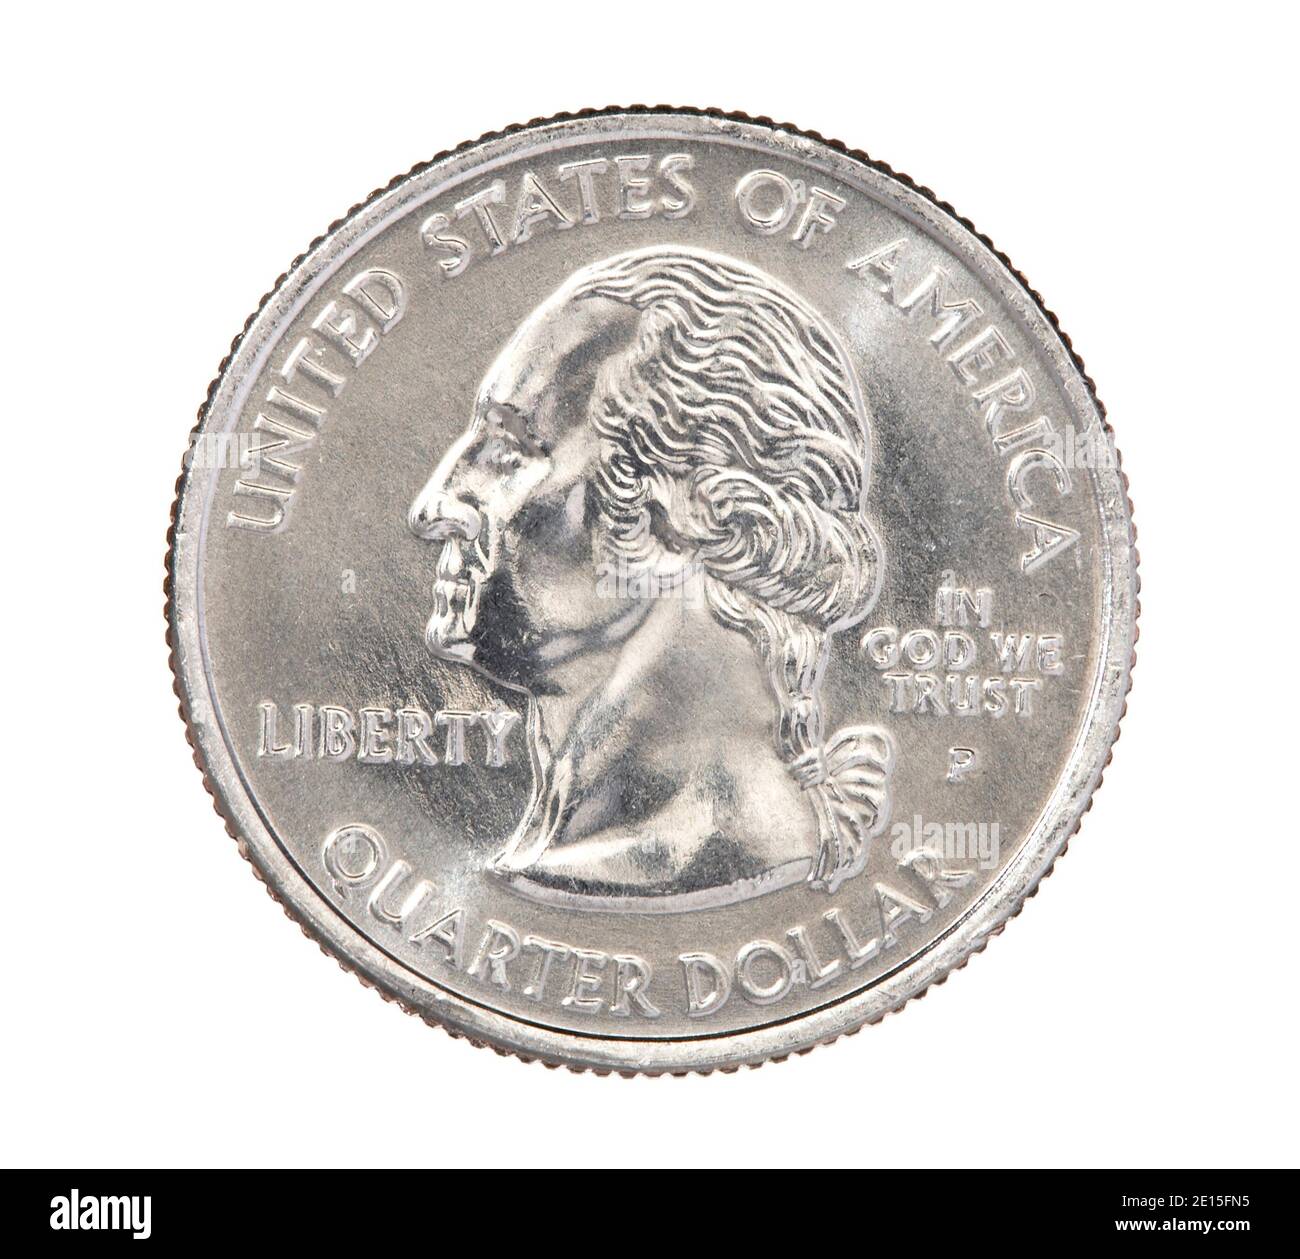 US-Viertel-Dollar-Münze Vorderseite auf einem weißen fotografiert Hintergrund Stockfoto